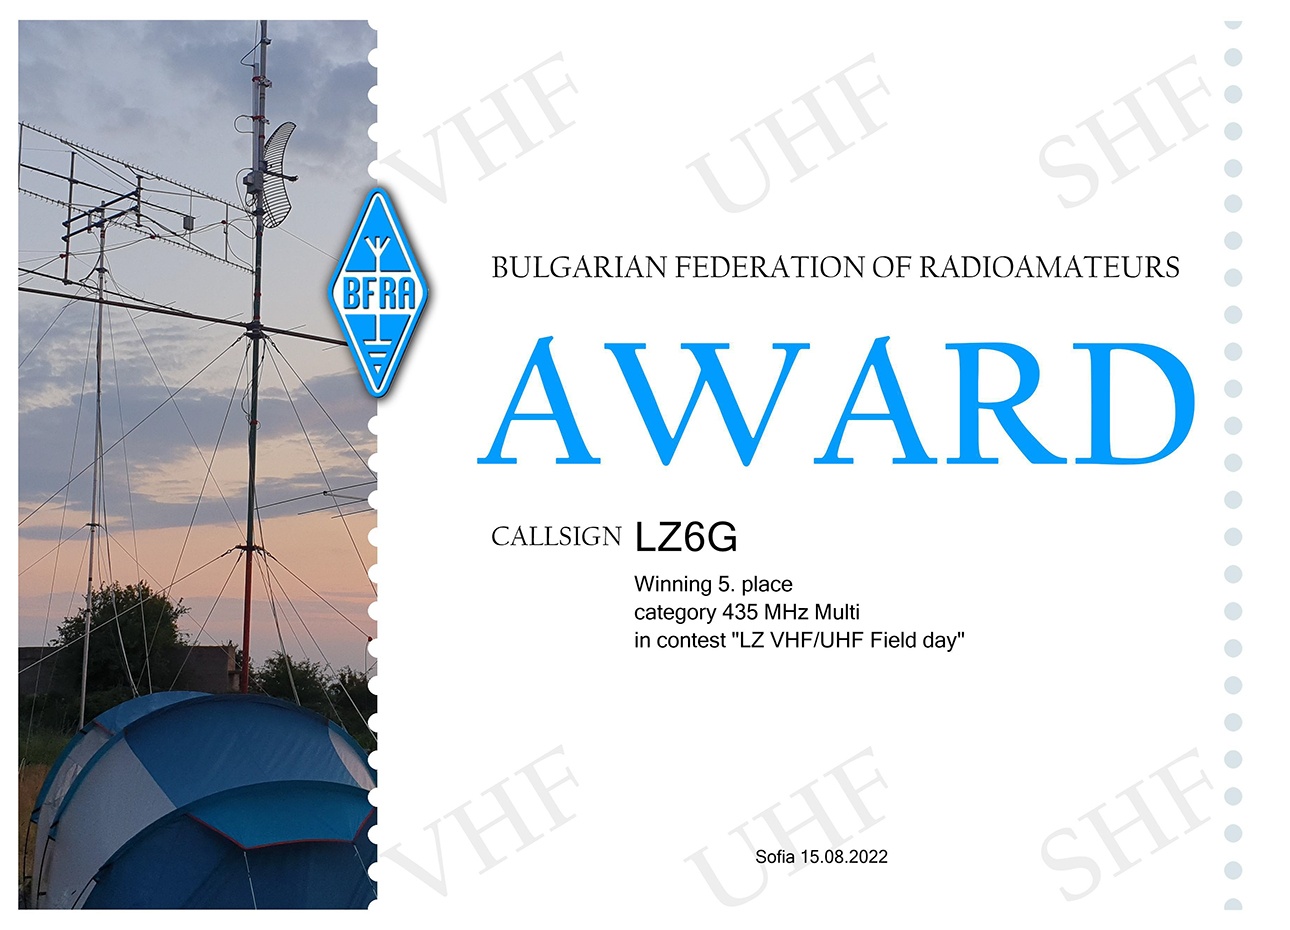 Award 435 MHz Multi